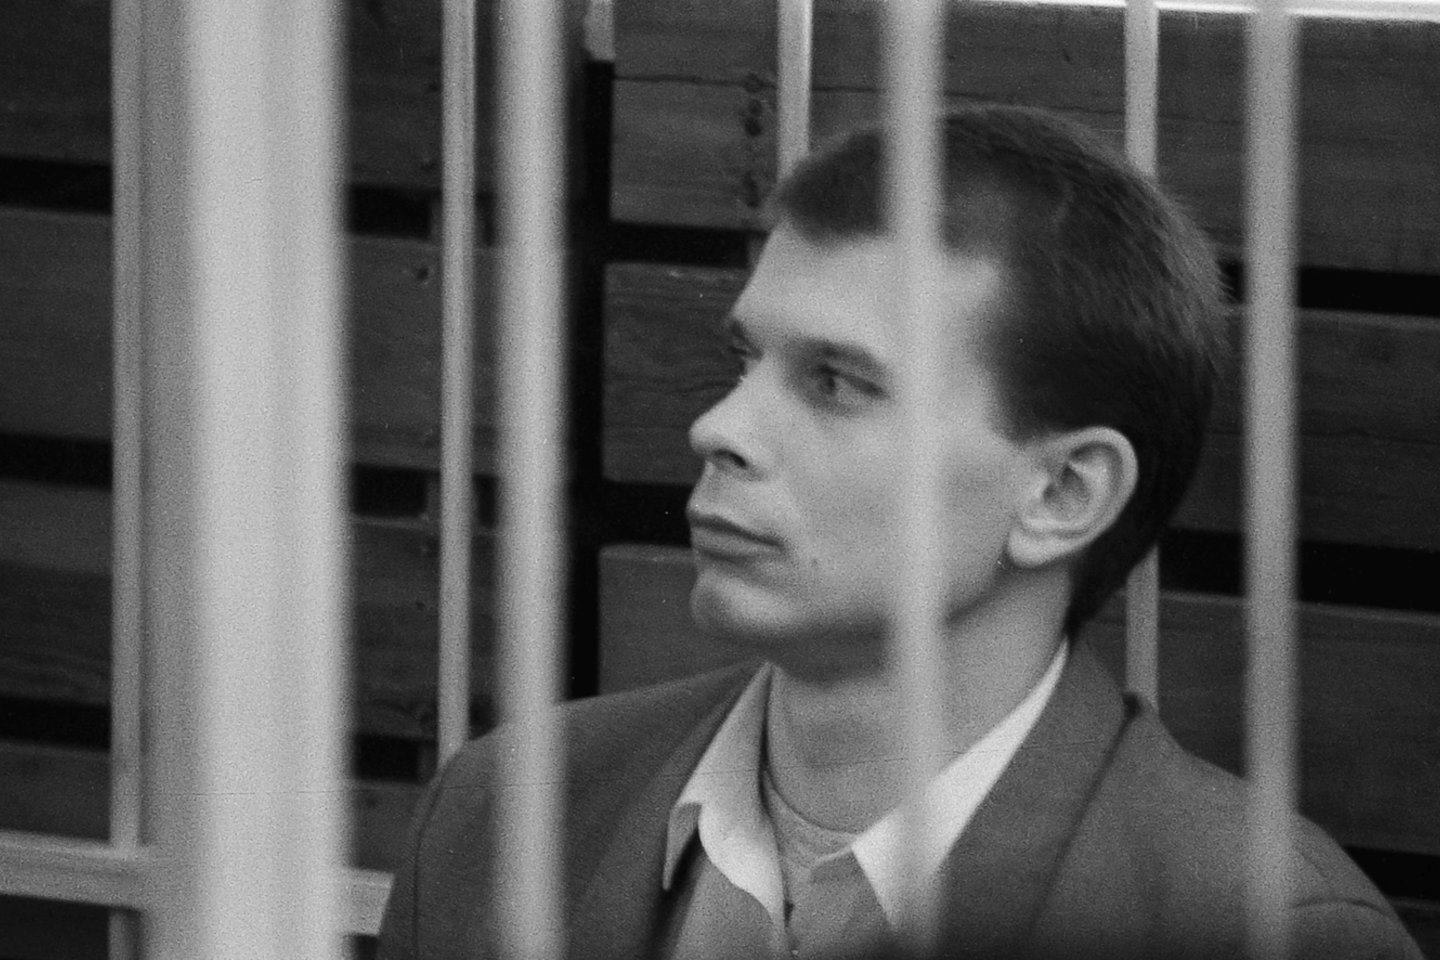  B.Dekanidzės ir jo gaujos narių teismas dėl žurnalisto V.Lingio nužudymo. 1994-ieji.<br> V.Ščiavinsko nuotr. iš archyvo